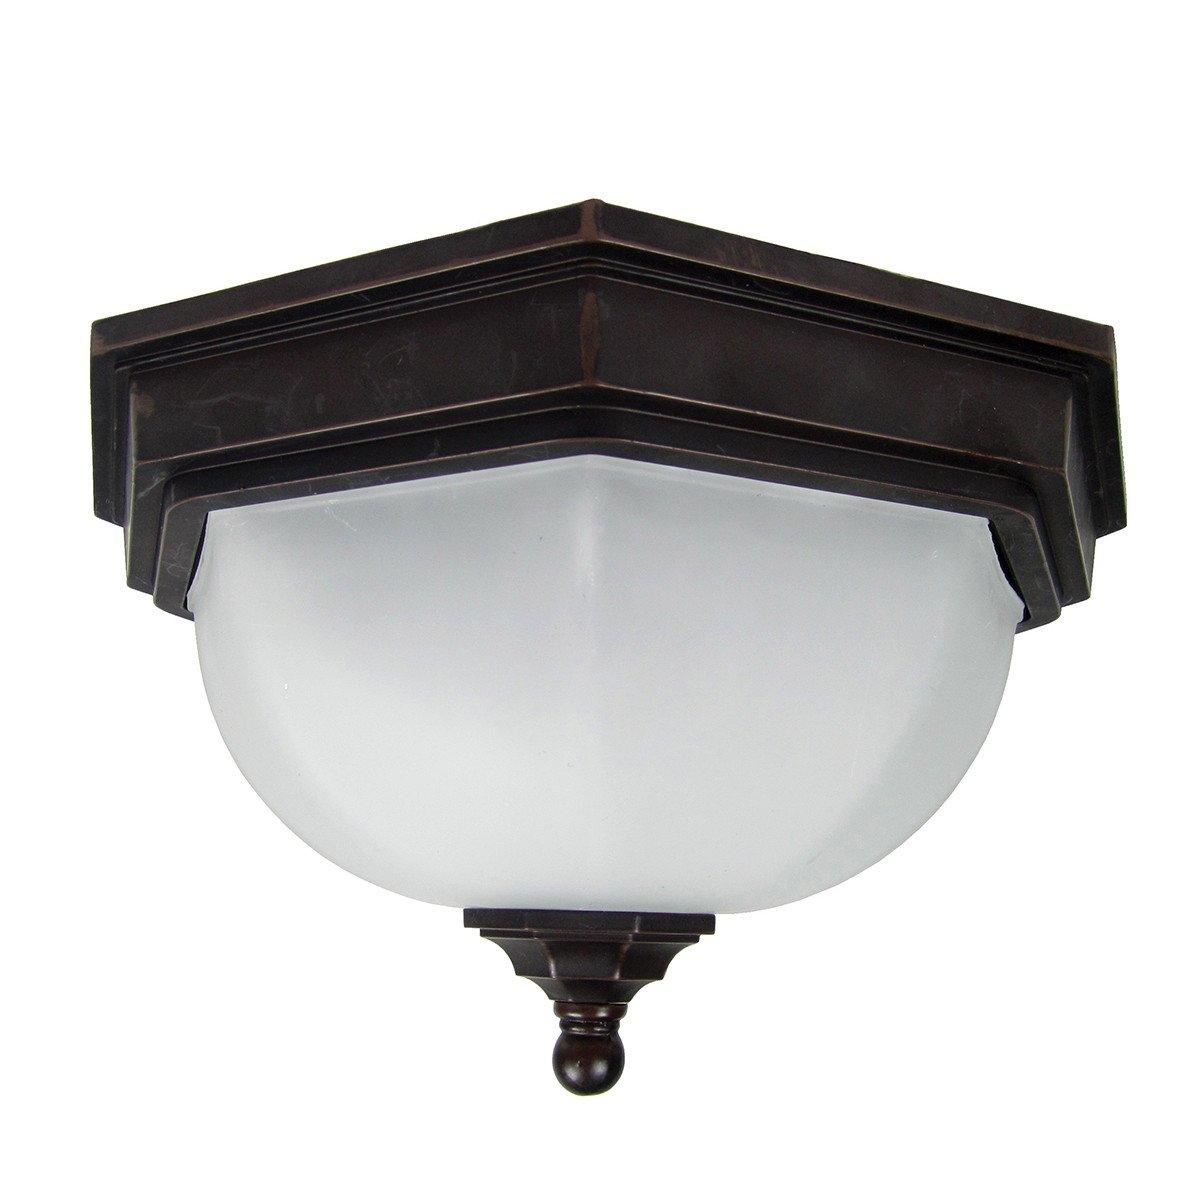 Fairford 2 Light Bathroom Flush Ceiling Lantern Bronze IP44 E27